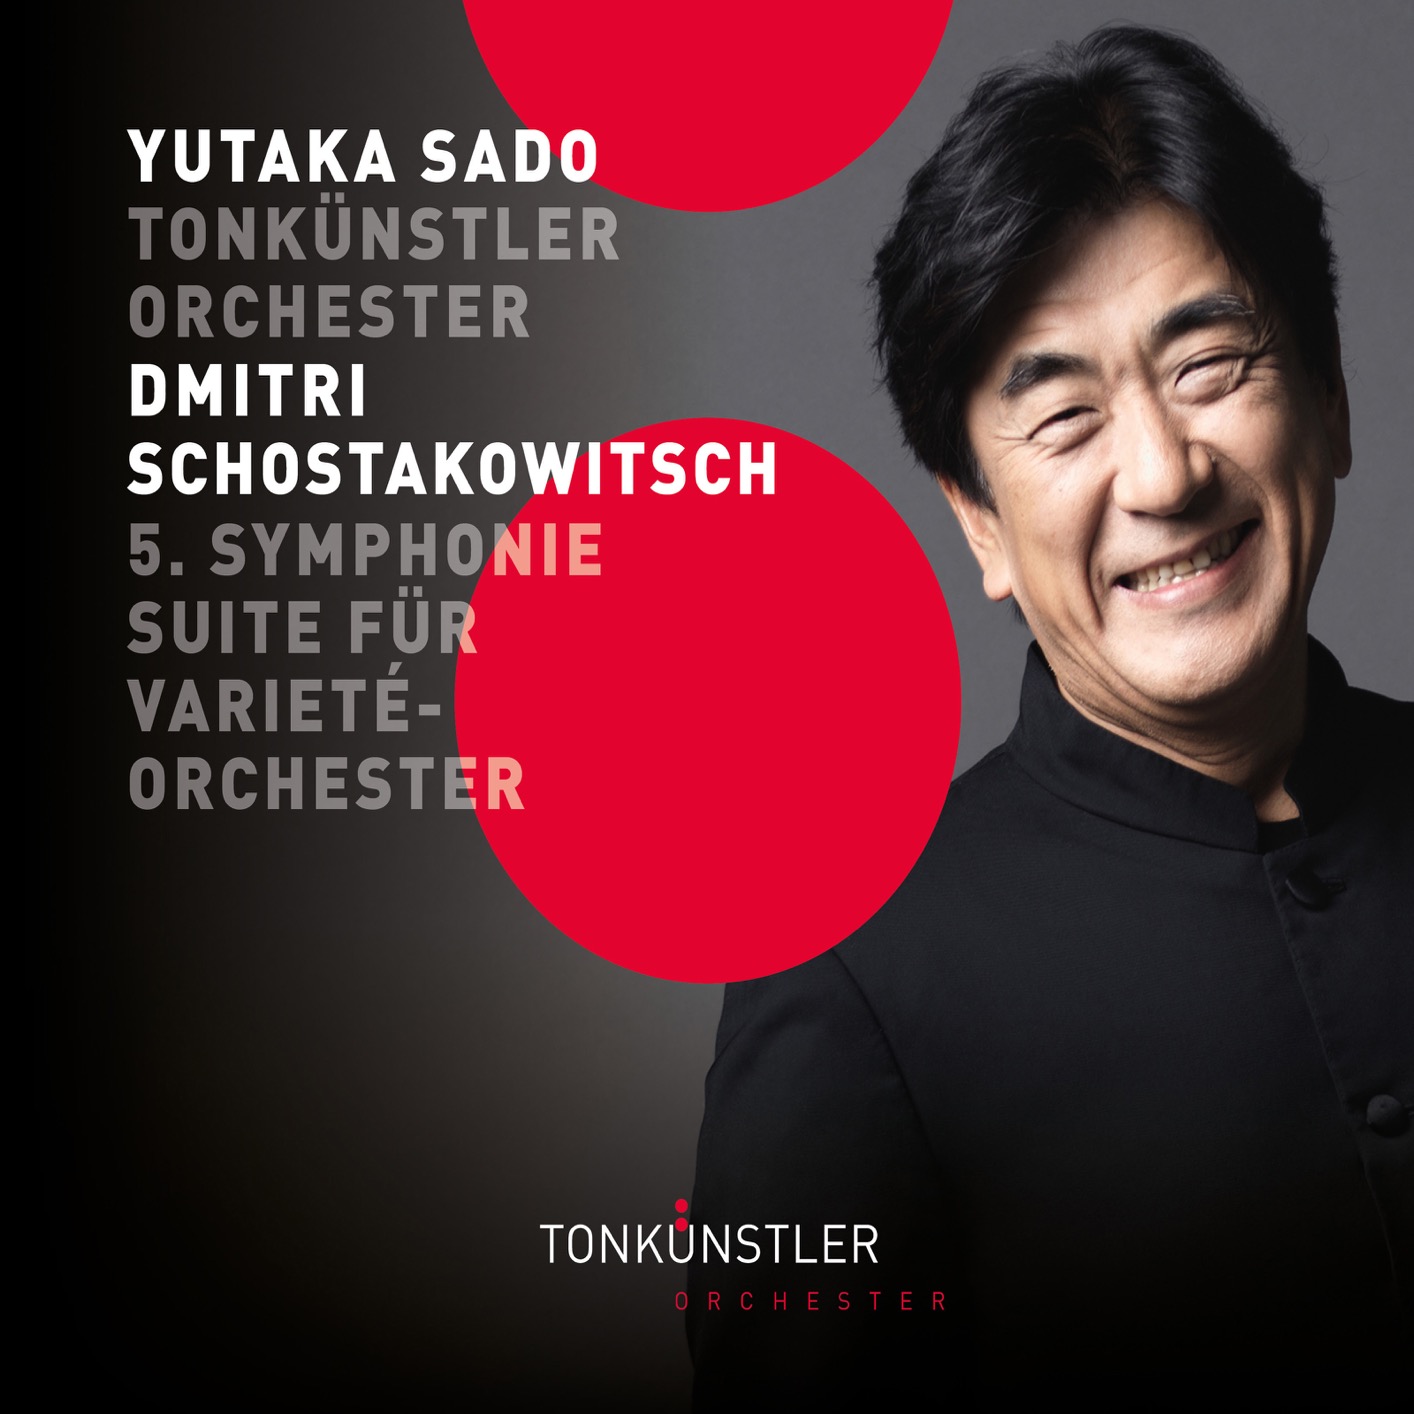 Tonkunstler Orchester & Yutaka Sado – Shostakovich: Symphony No. 5 & Suite for Variety Orchestra (2018) [FLAC 24bit/192kHz]